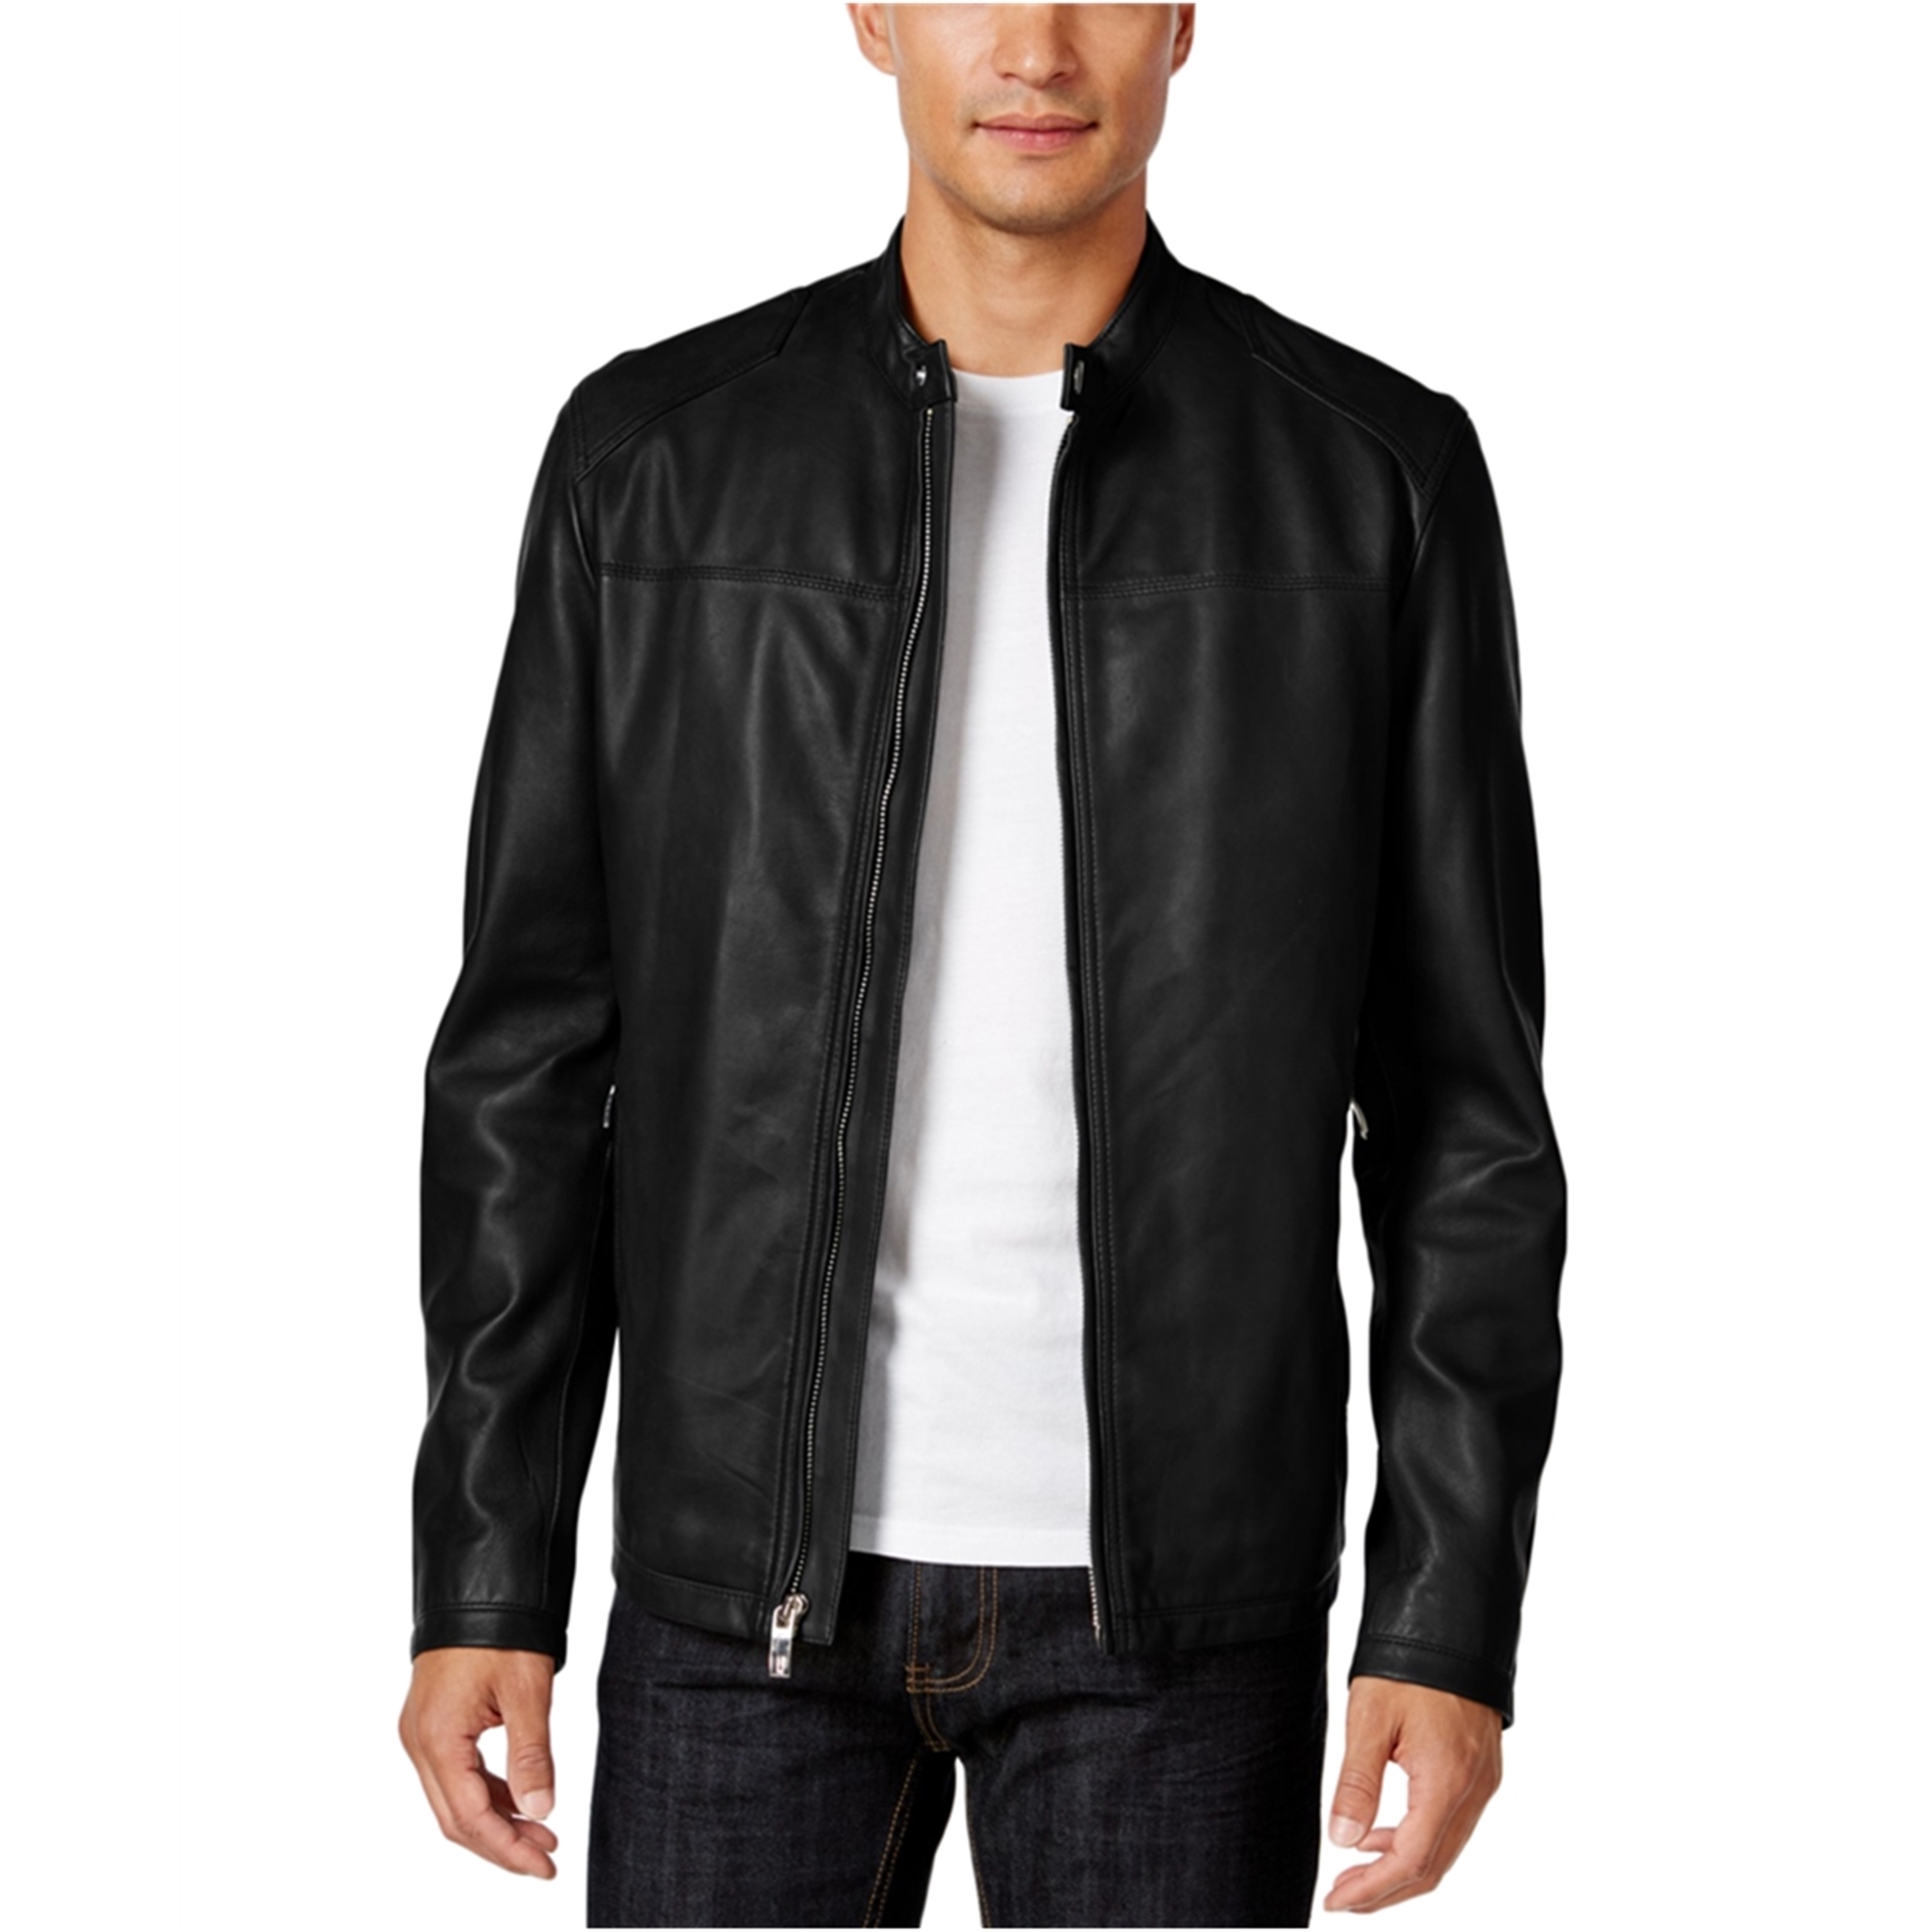 I-N-C Men's Coats & Jackets: Leather & Suede - Kmart